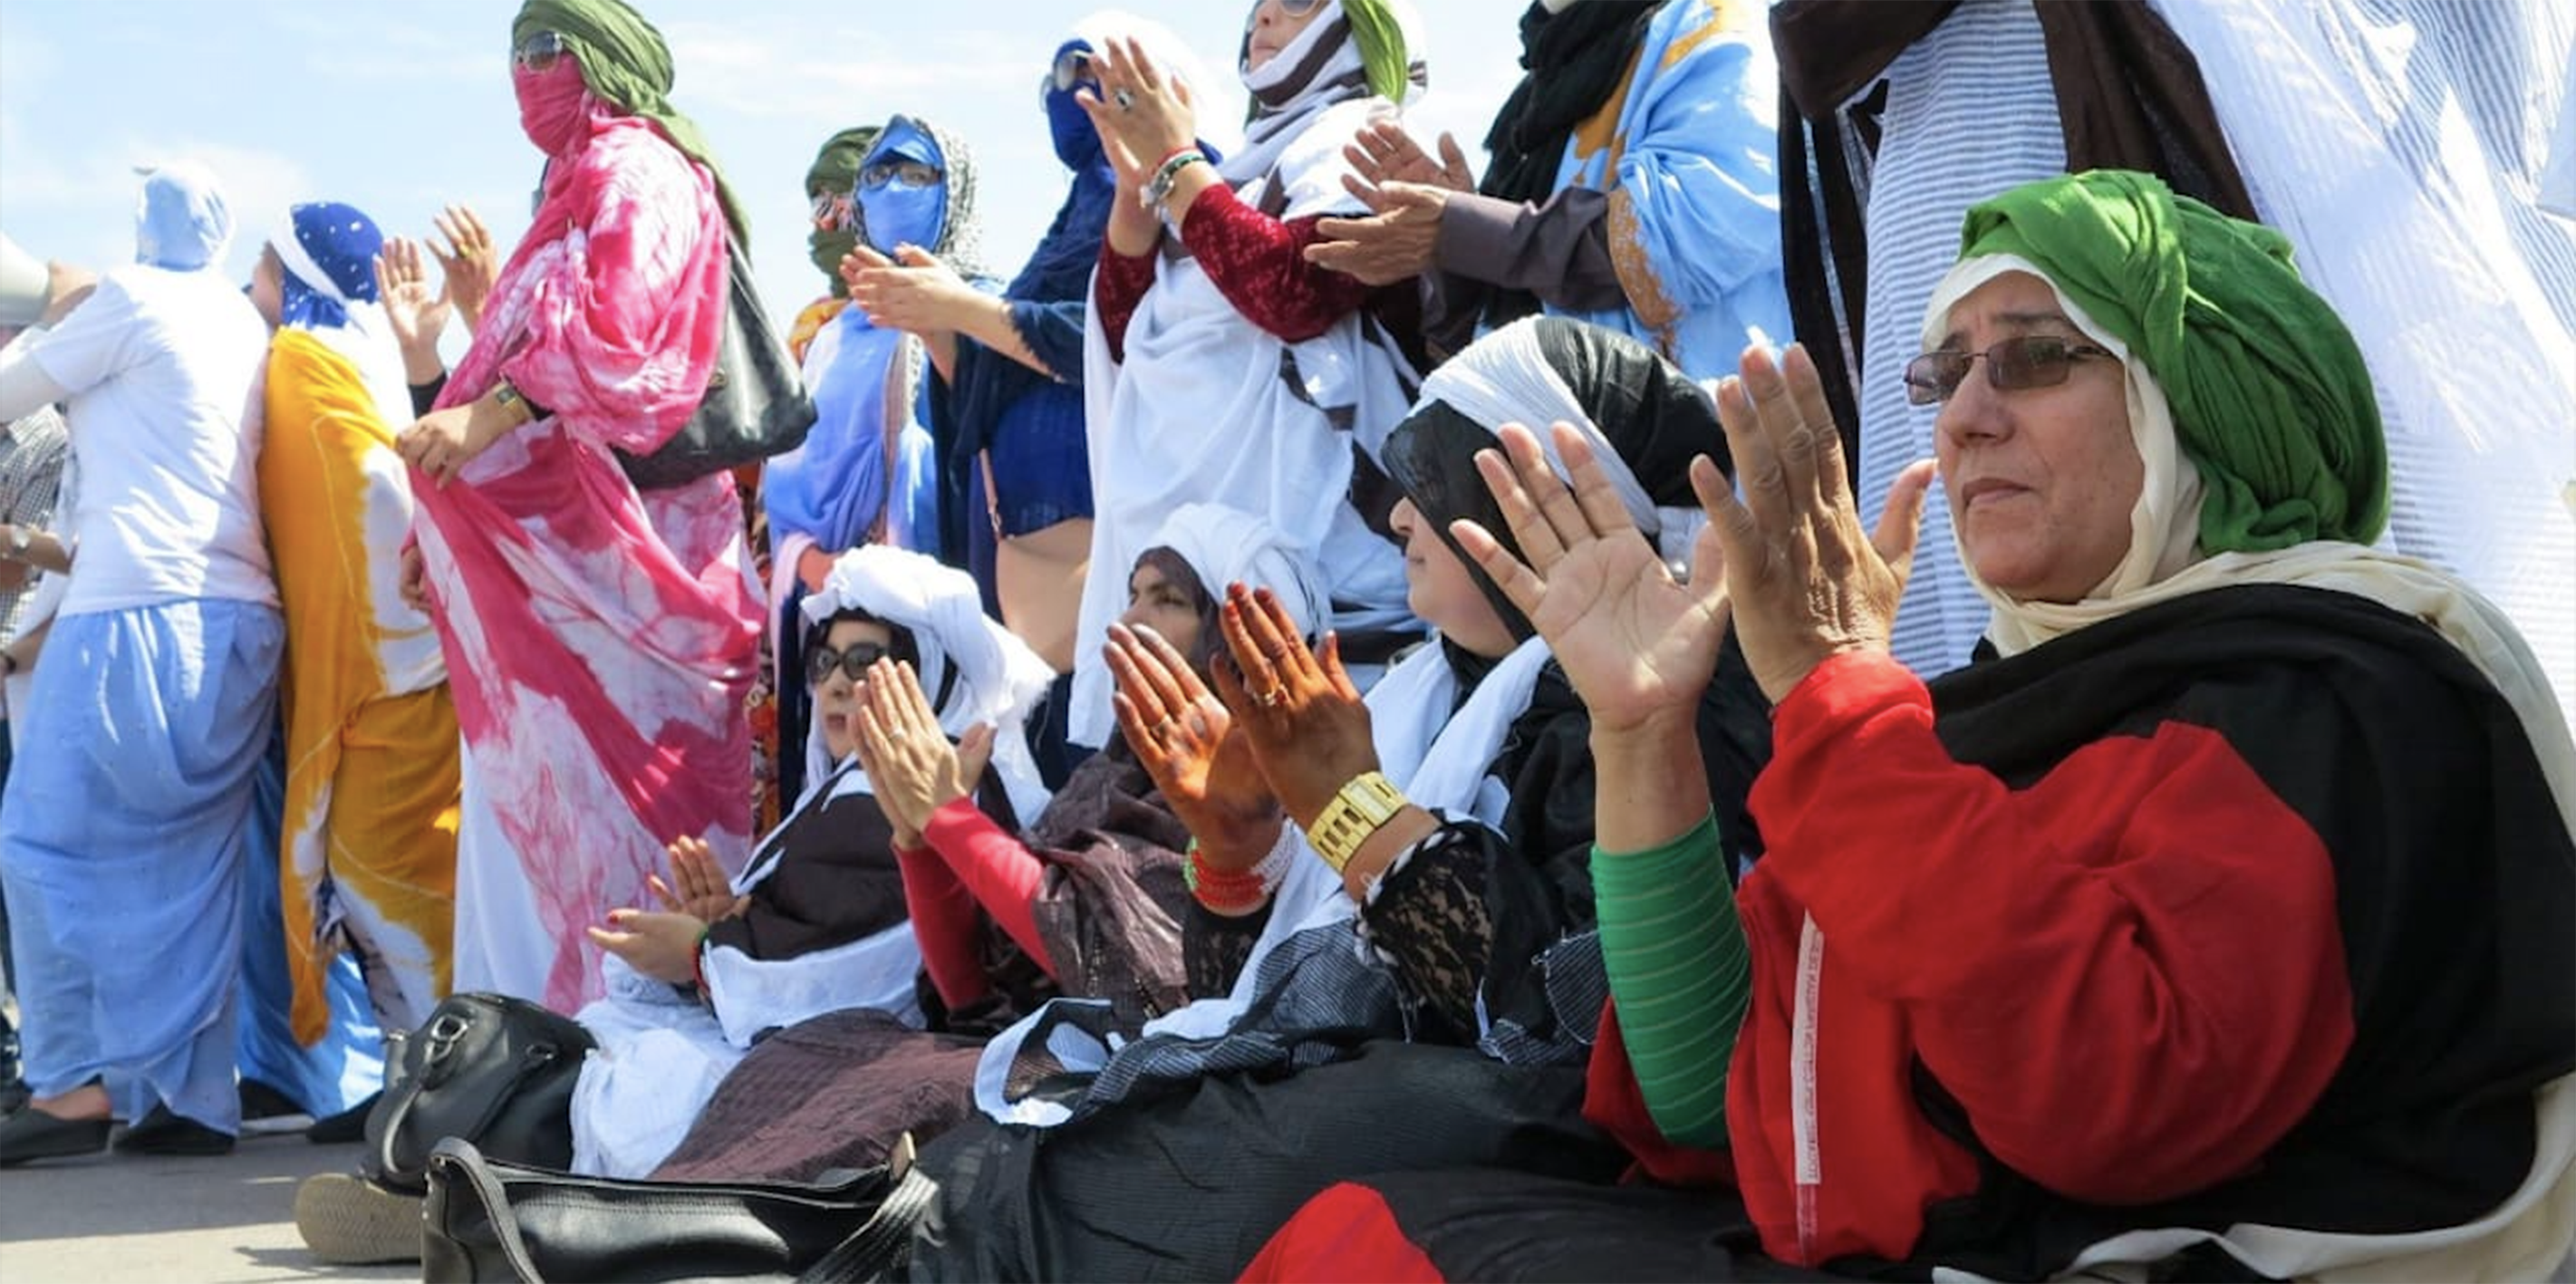 Vigilancia extrema: el calvario de las mujeres saharauis bajo ocupación marroquí